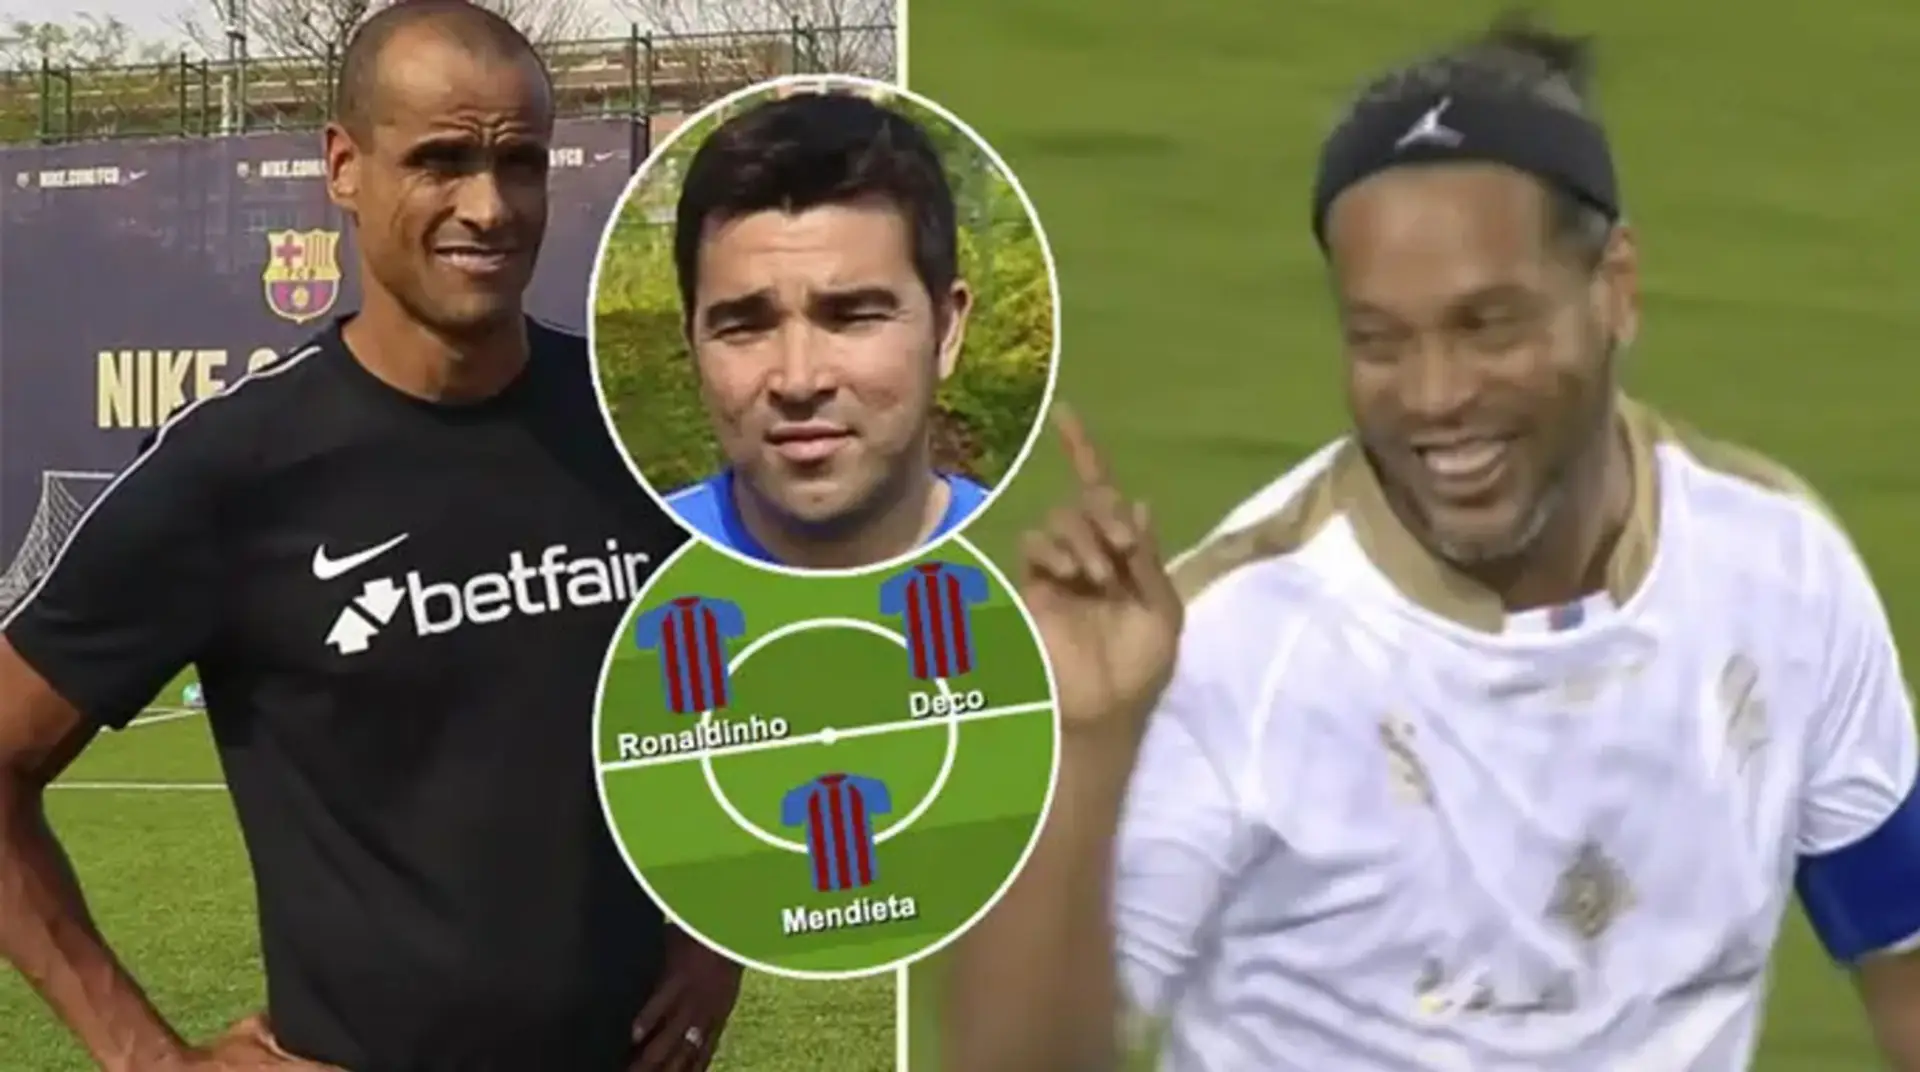 Con Ronaldinho y Deco: como podría alinear el Barça para el Clásico de Leyendas